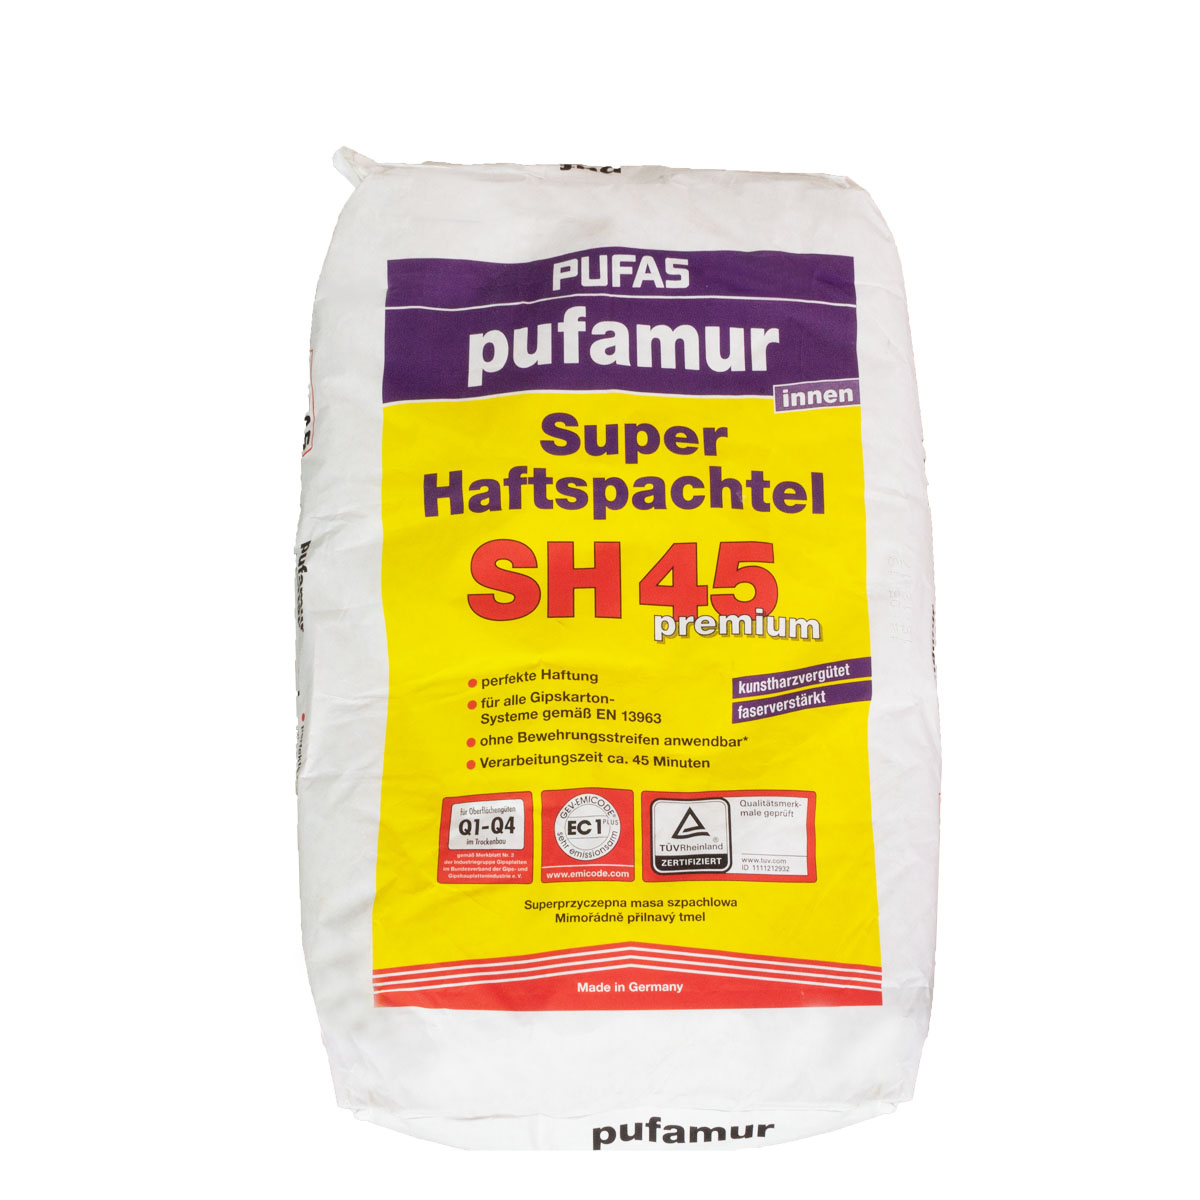 Pufas Pufamur Super-Haftspachtel SH45 25 kg, kunstharzvergütet, Q1-Q4